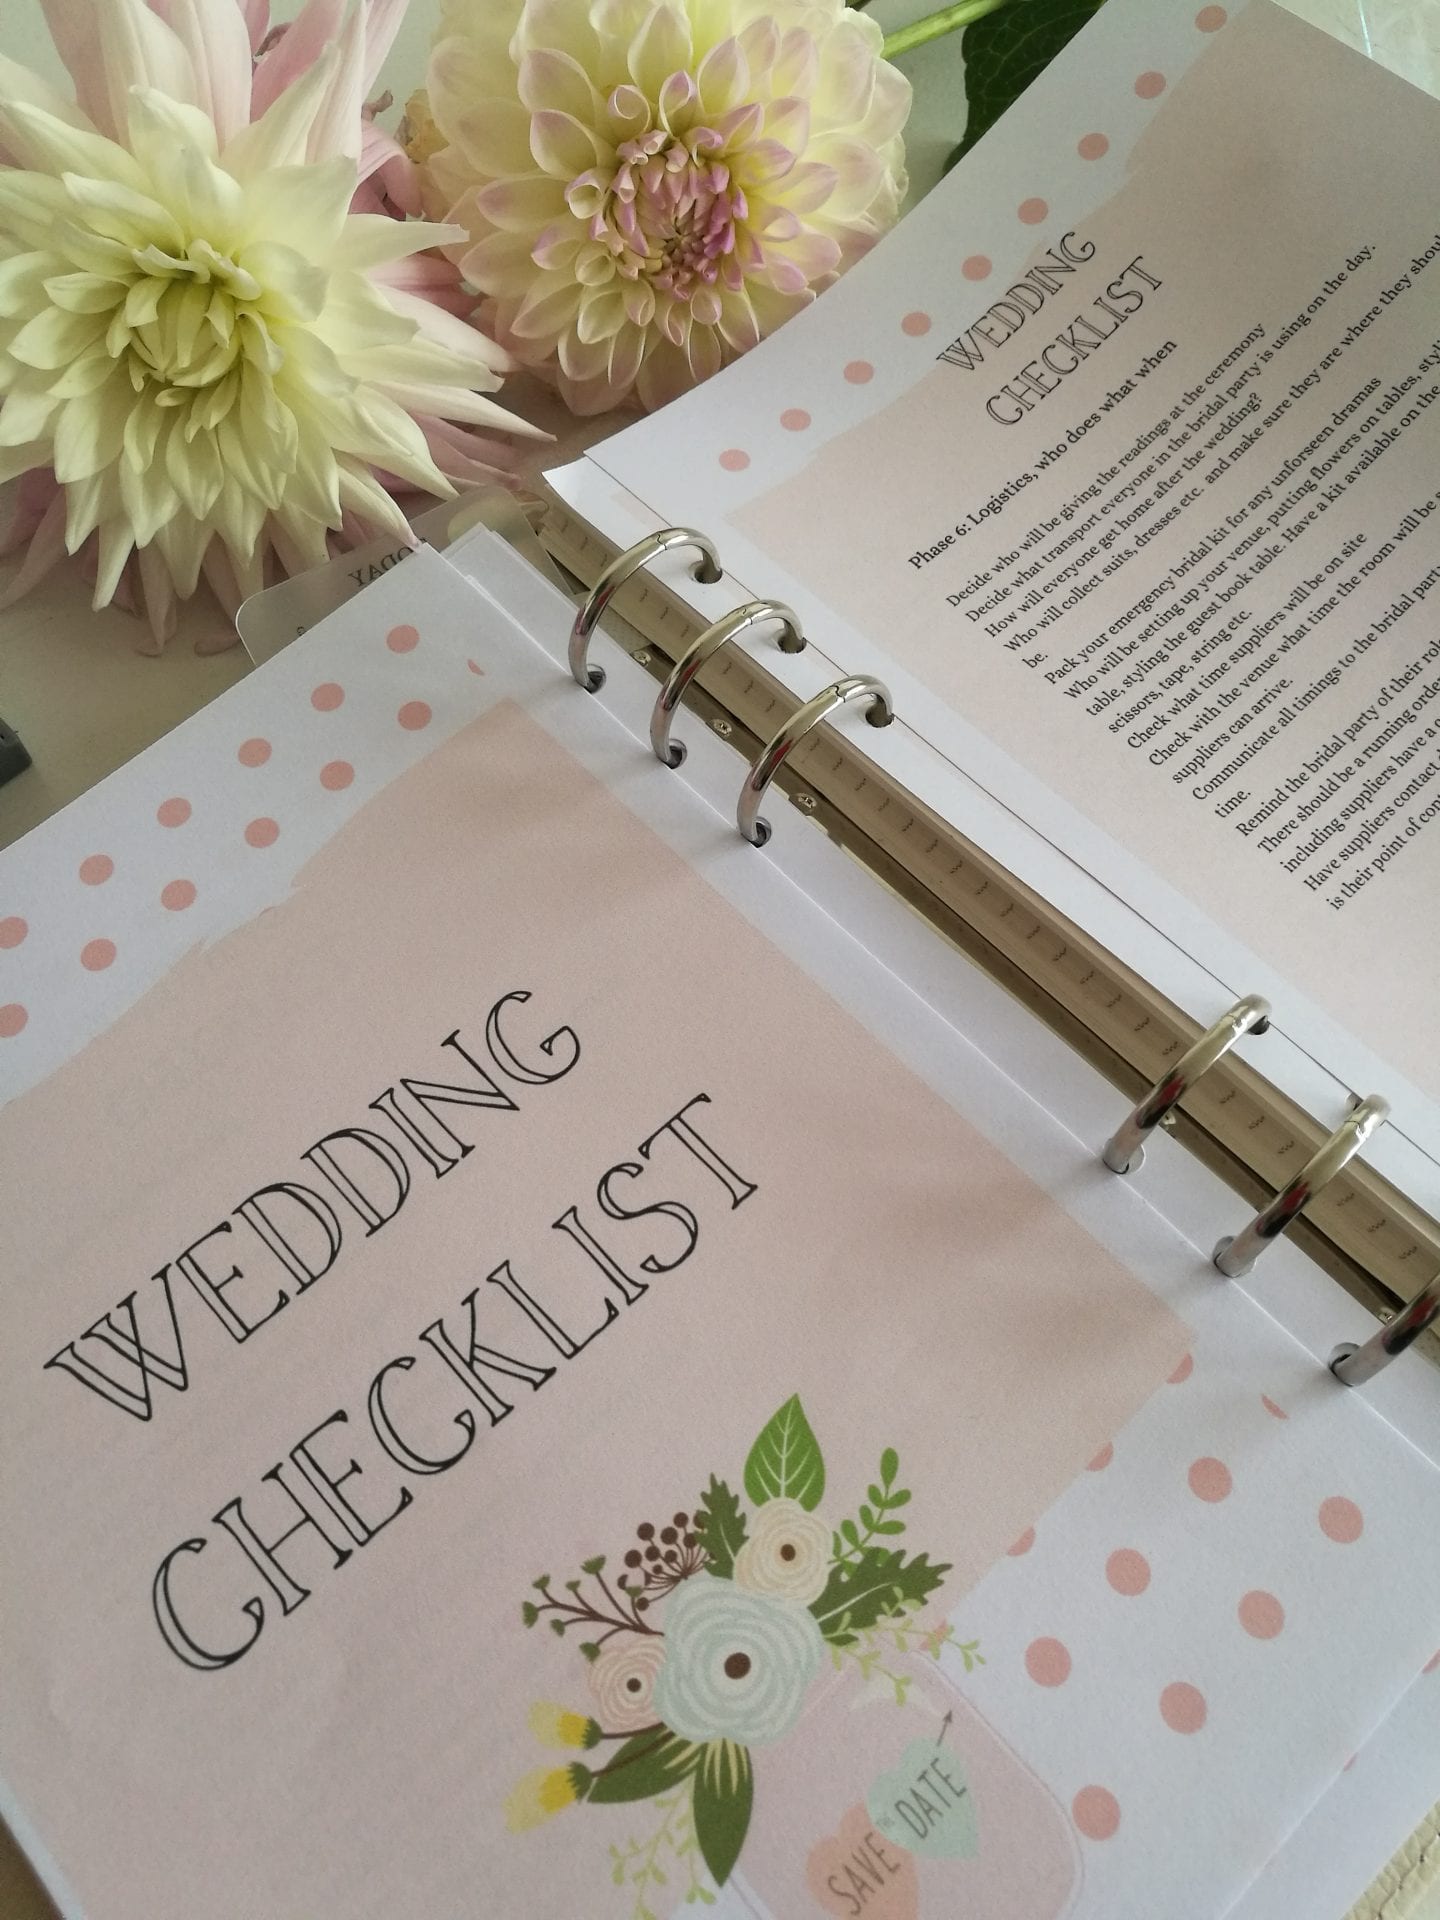 Wedding checklists